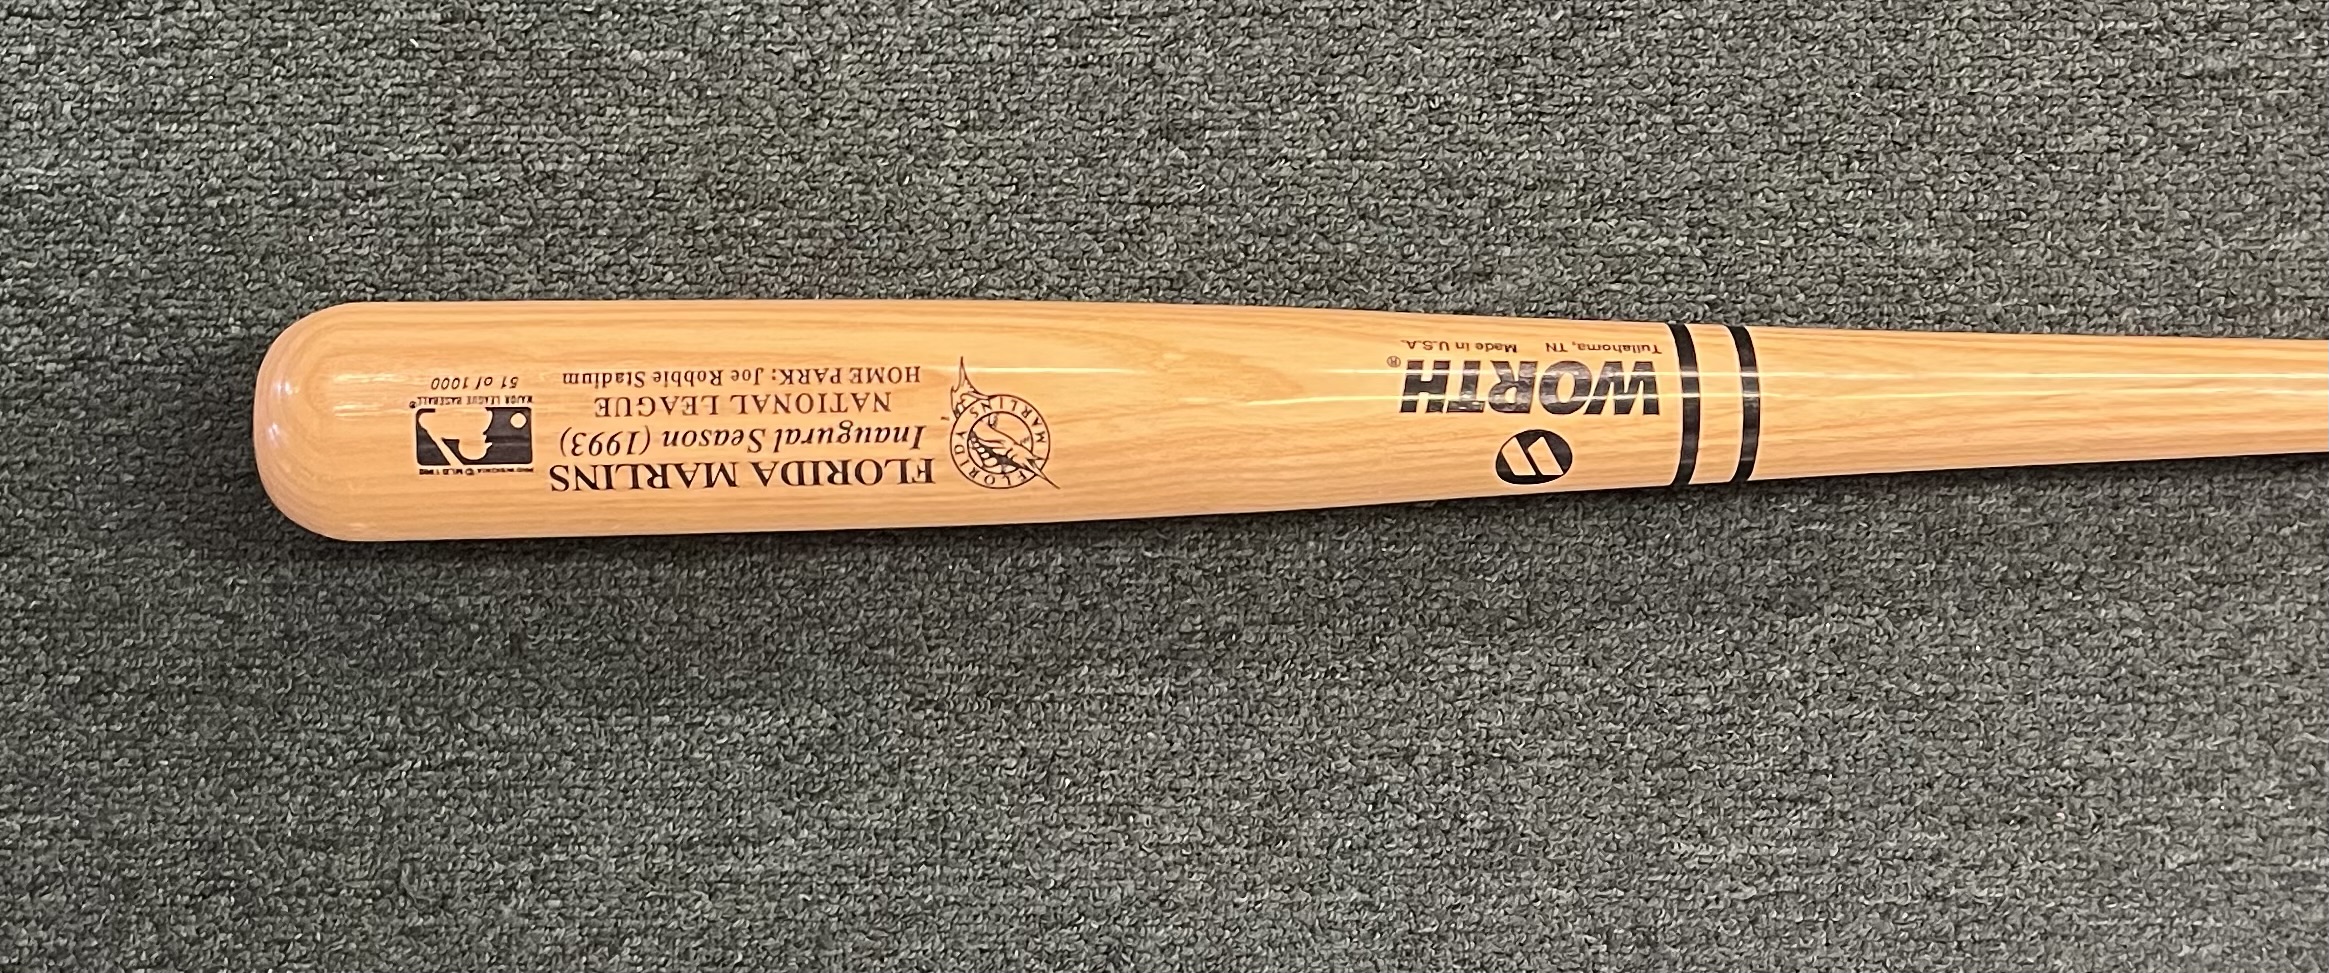 1993 Florida Marlins Inaugural Season  Bat